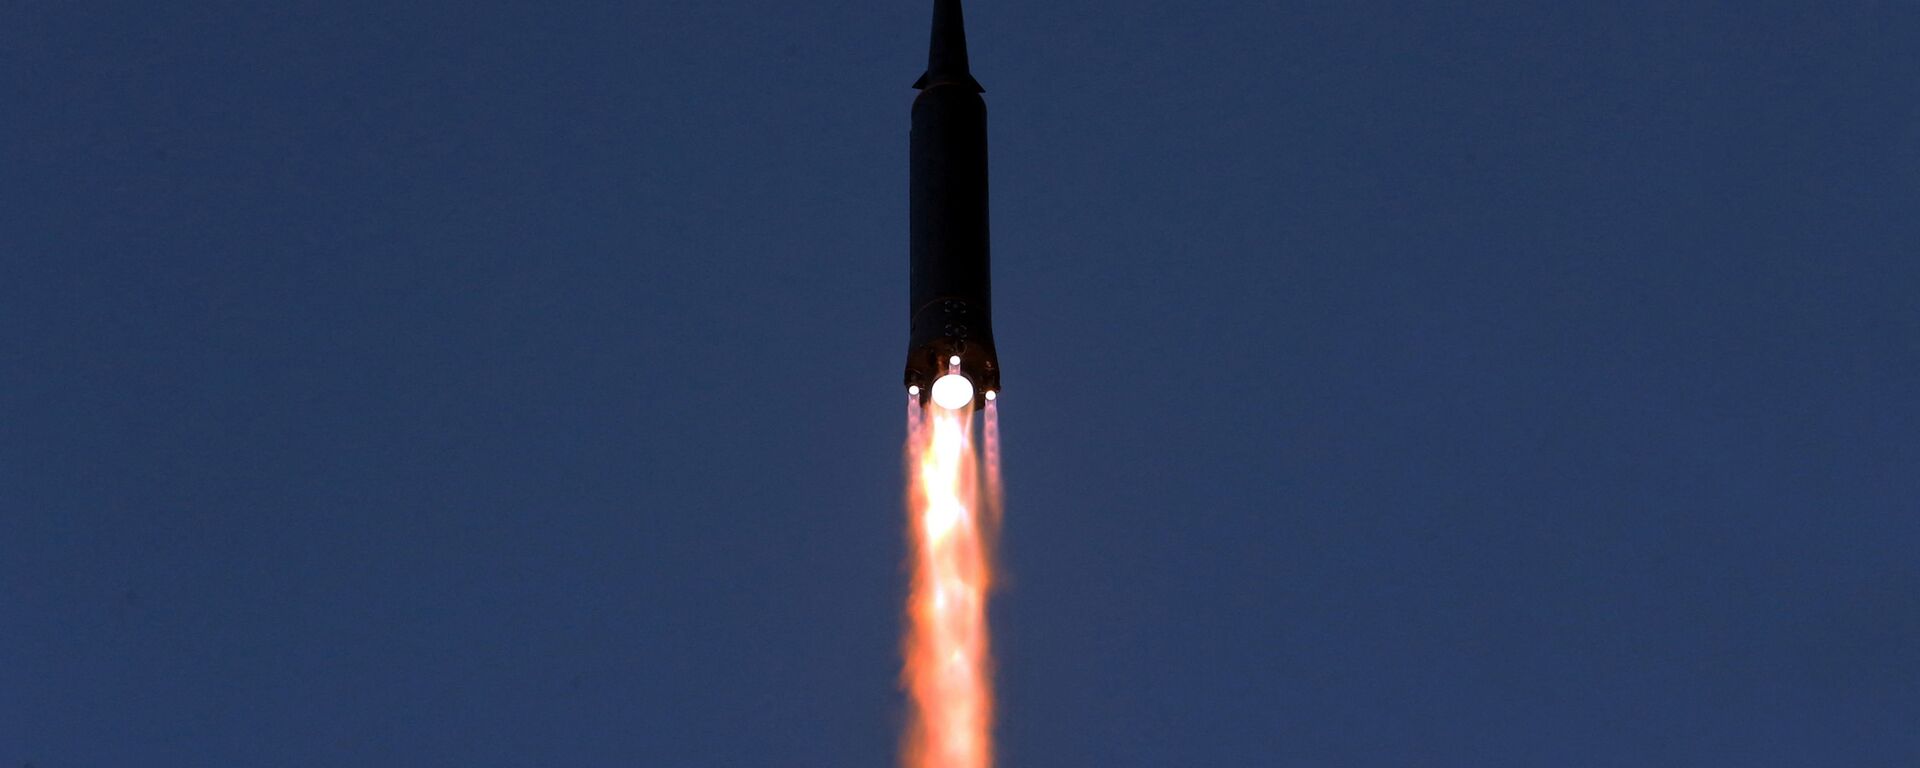 Запуск ракеты в КНДР  - Sputnik Mundo, 1920, 12.01.2022